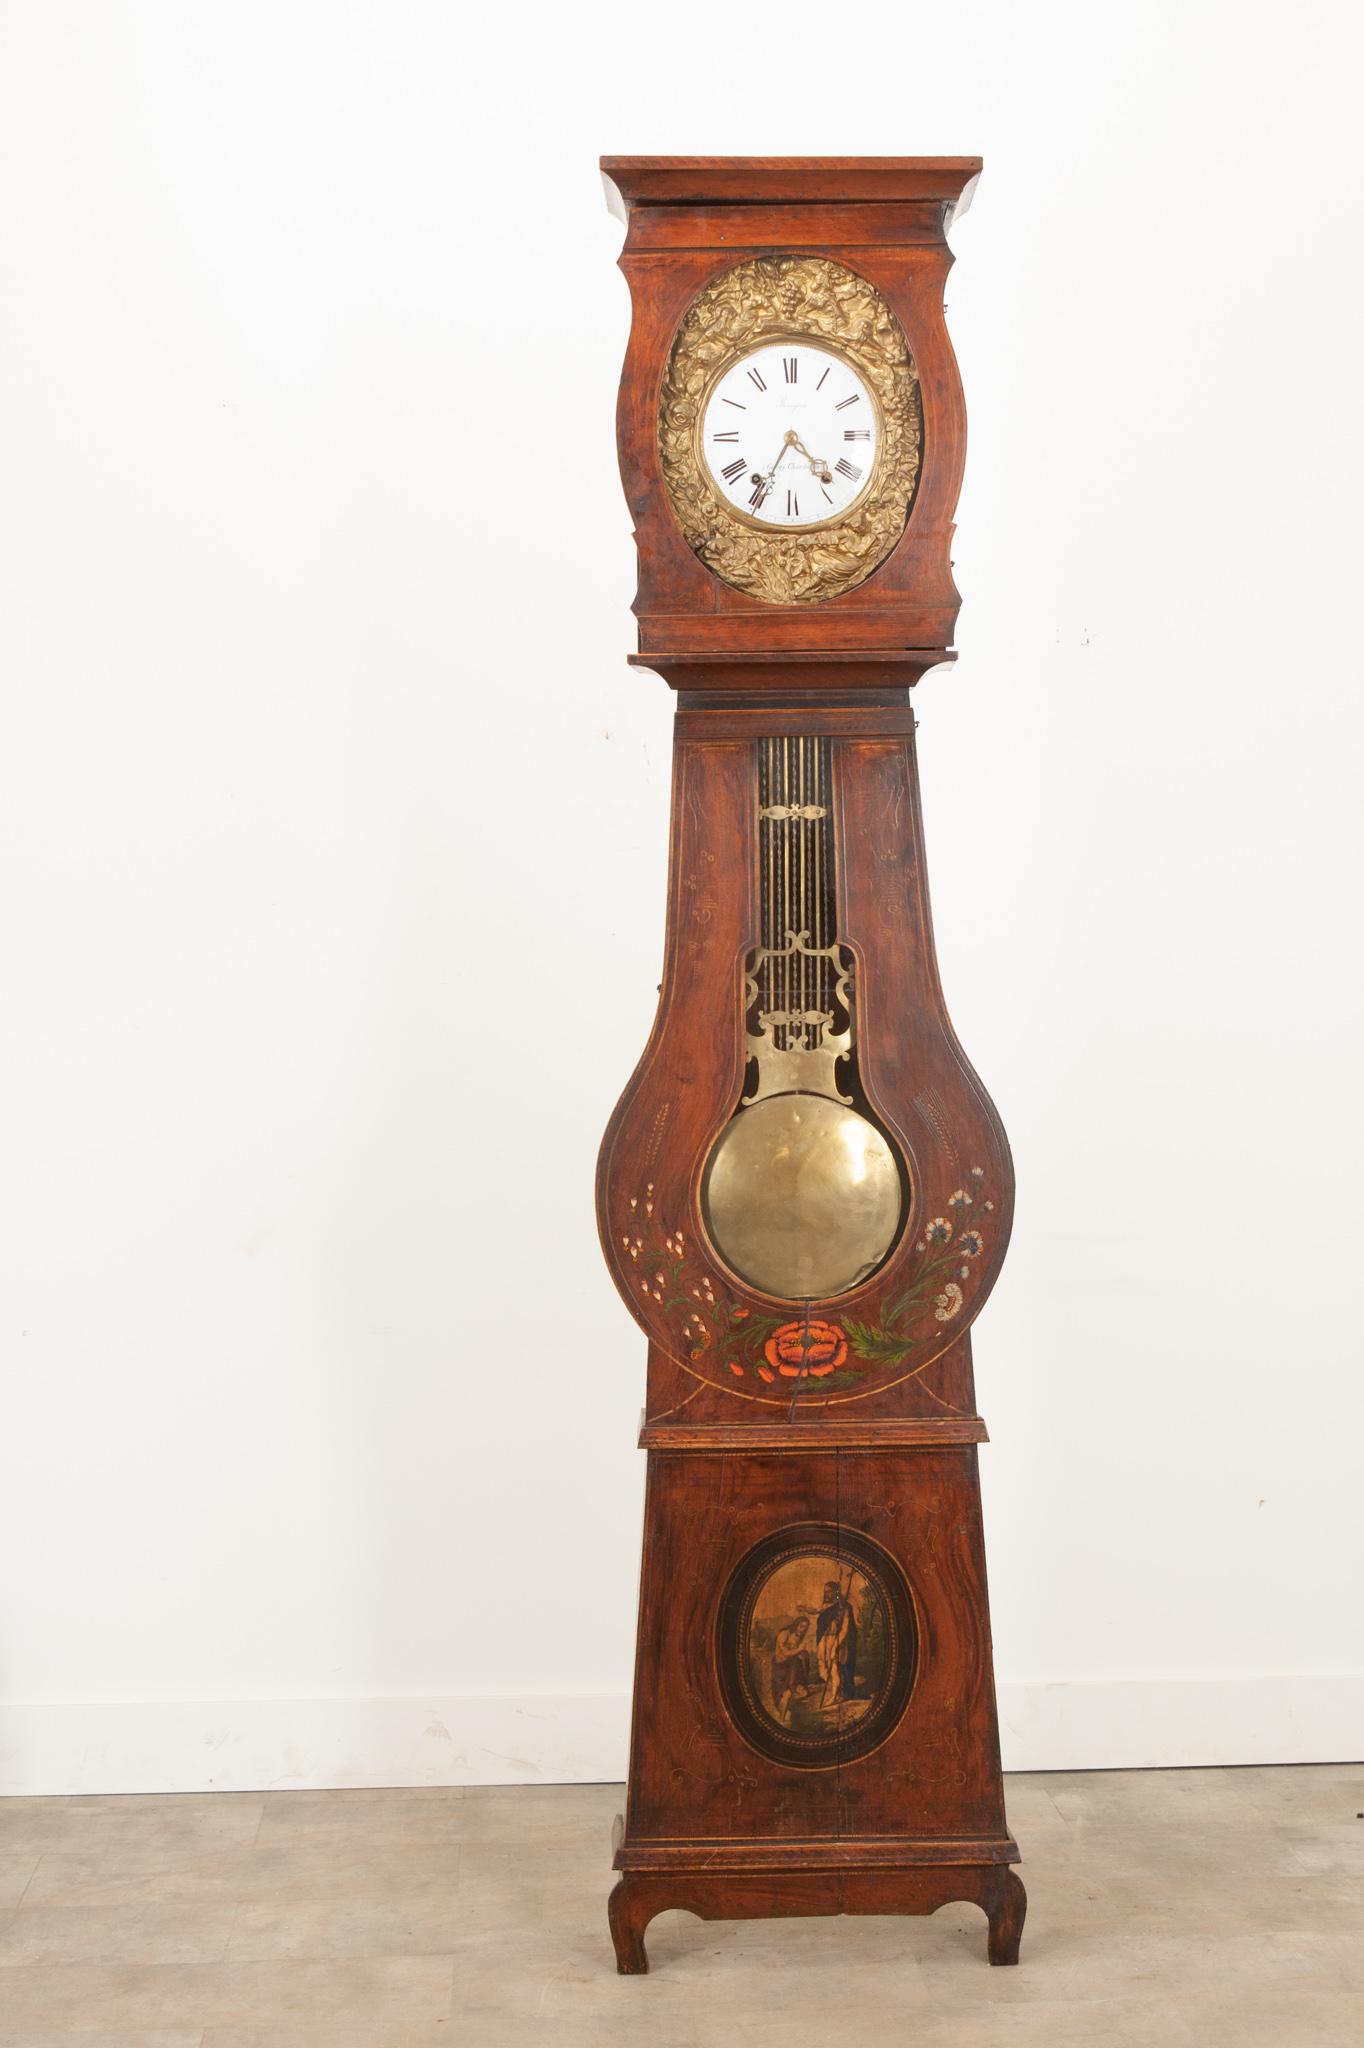 Cette horloge française du 19ème siècle en forme de banjo est une pièce qui attire l'attention dans n'importe quel espace. Surmonté d'une corniche élégamment sculptée au-dessus de la porte du cadran. Soutenu par une façade en laiton repoussé, le